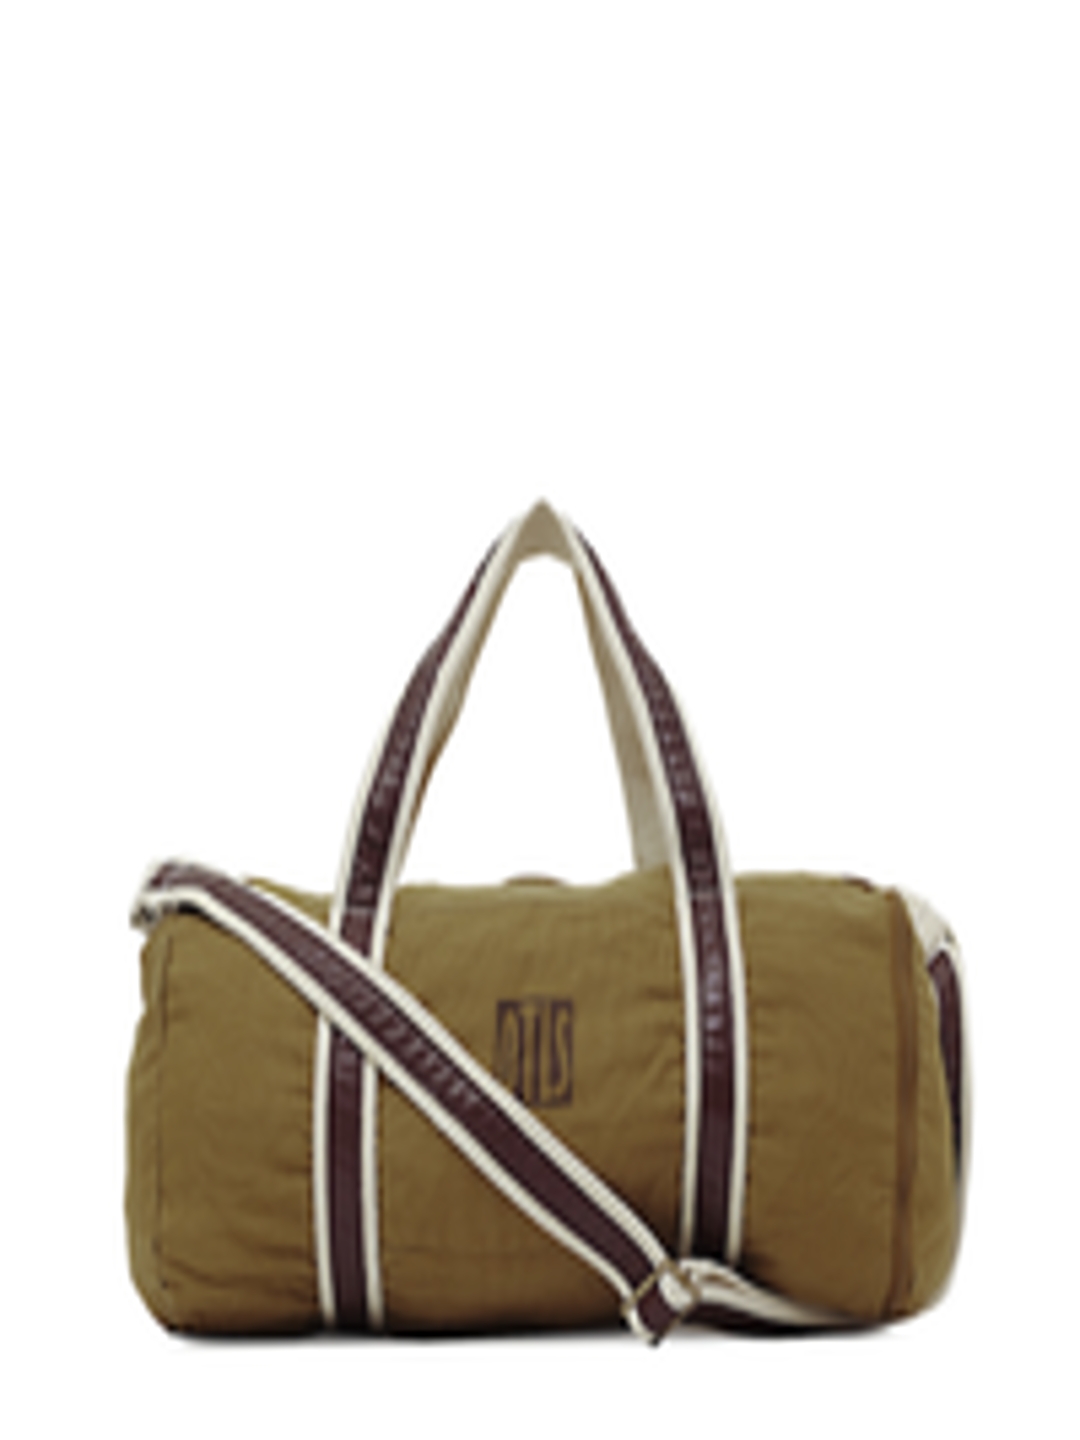 Buy OTLS Unisex Khaki Gym Bag - Duffel Bag for Unisex 36073 | Myntra